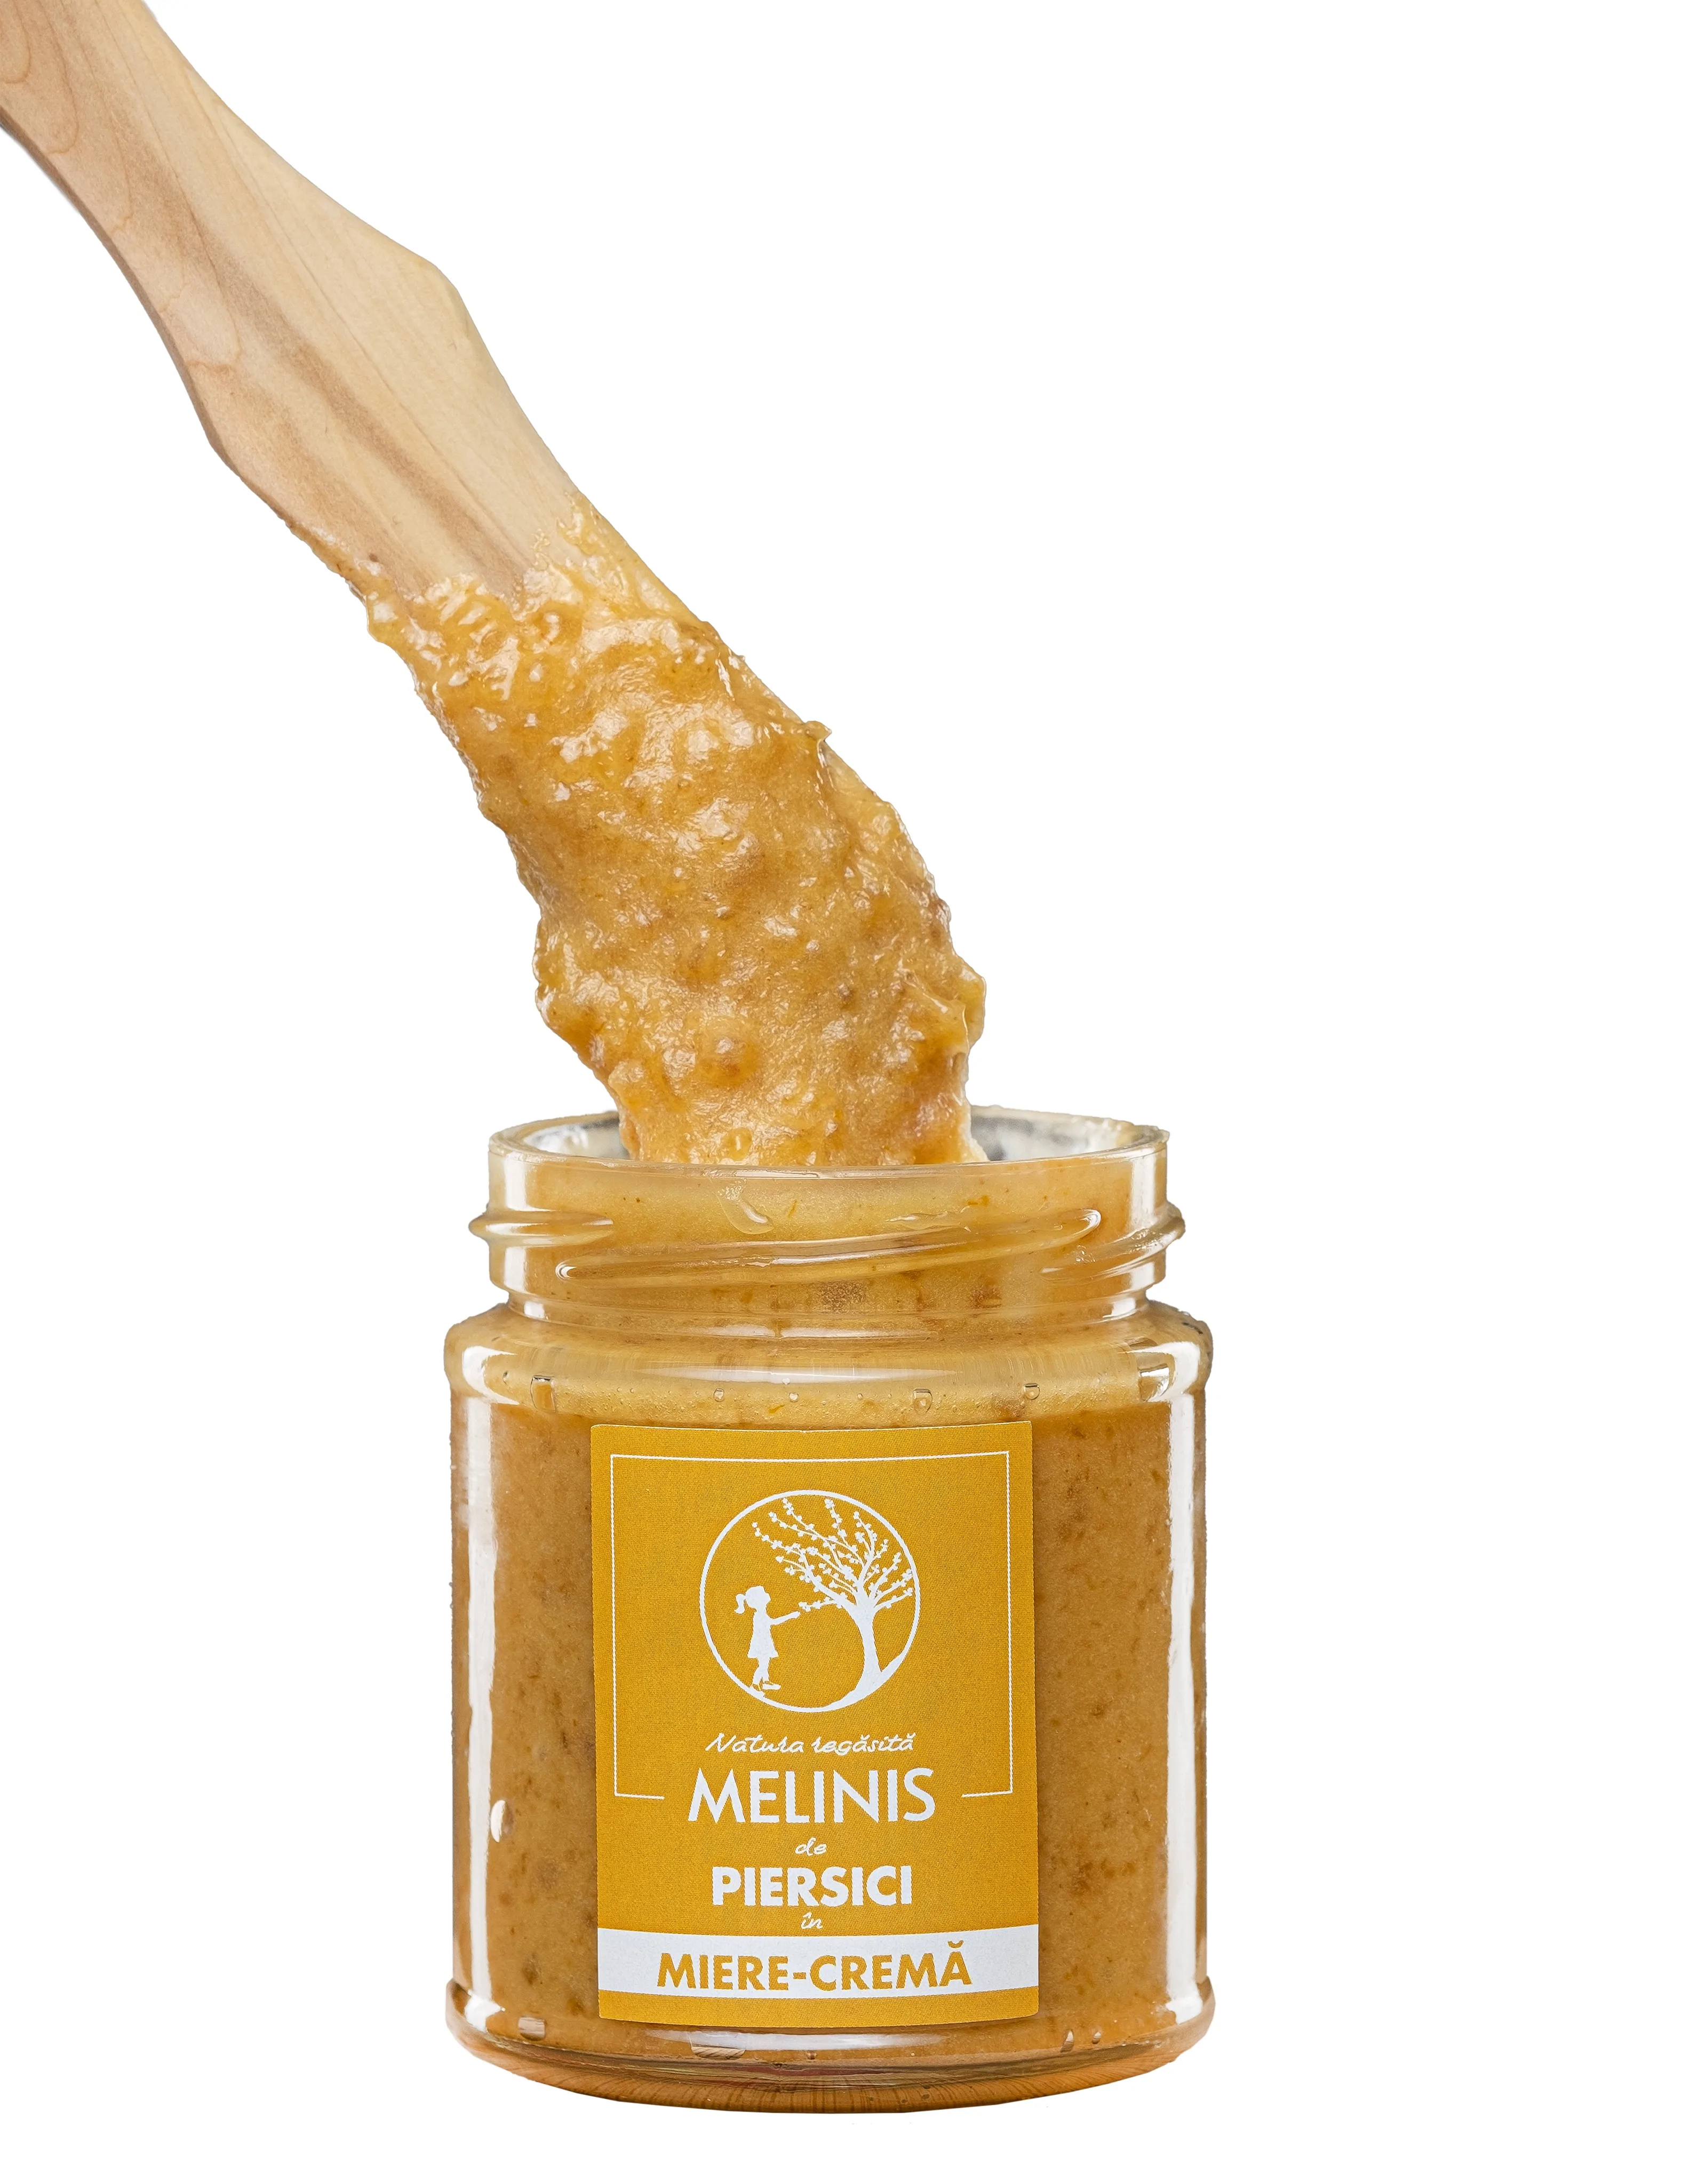 Crema de piersici cu miere poliflora 230g Melinis [1]